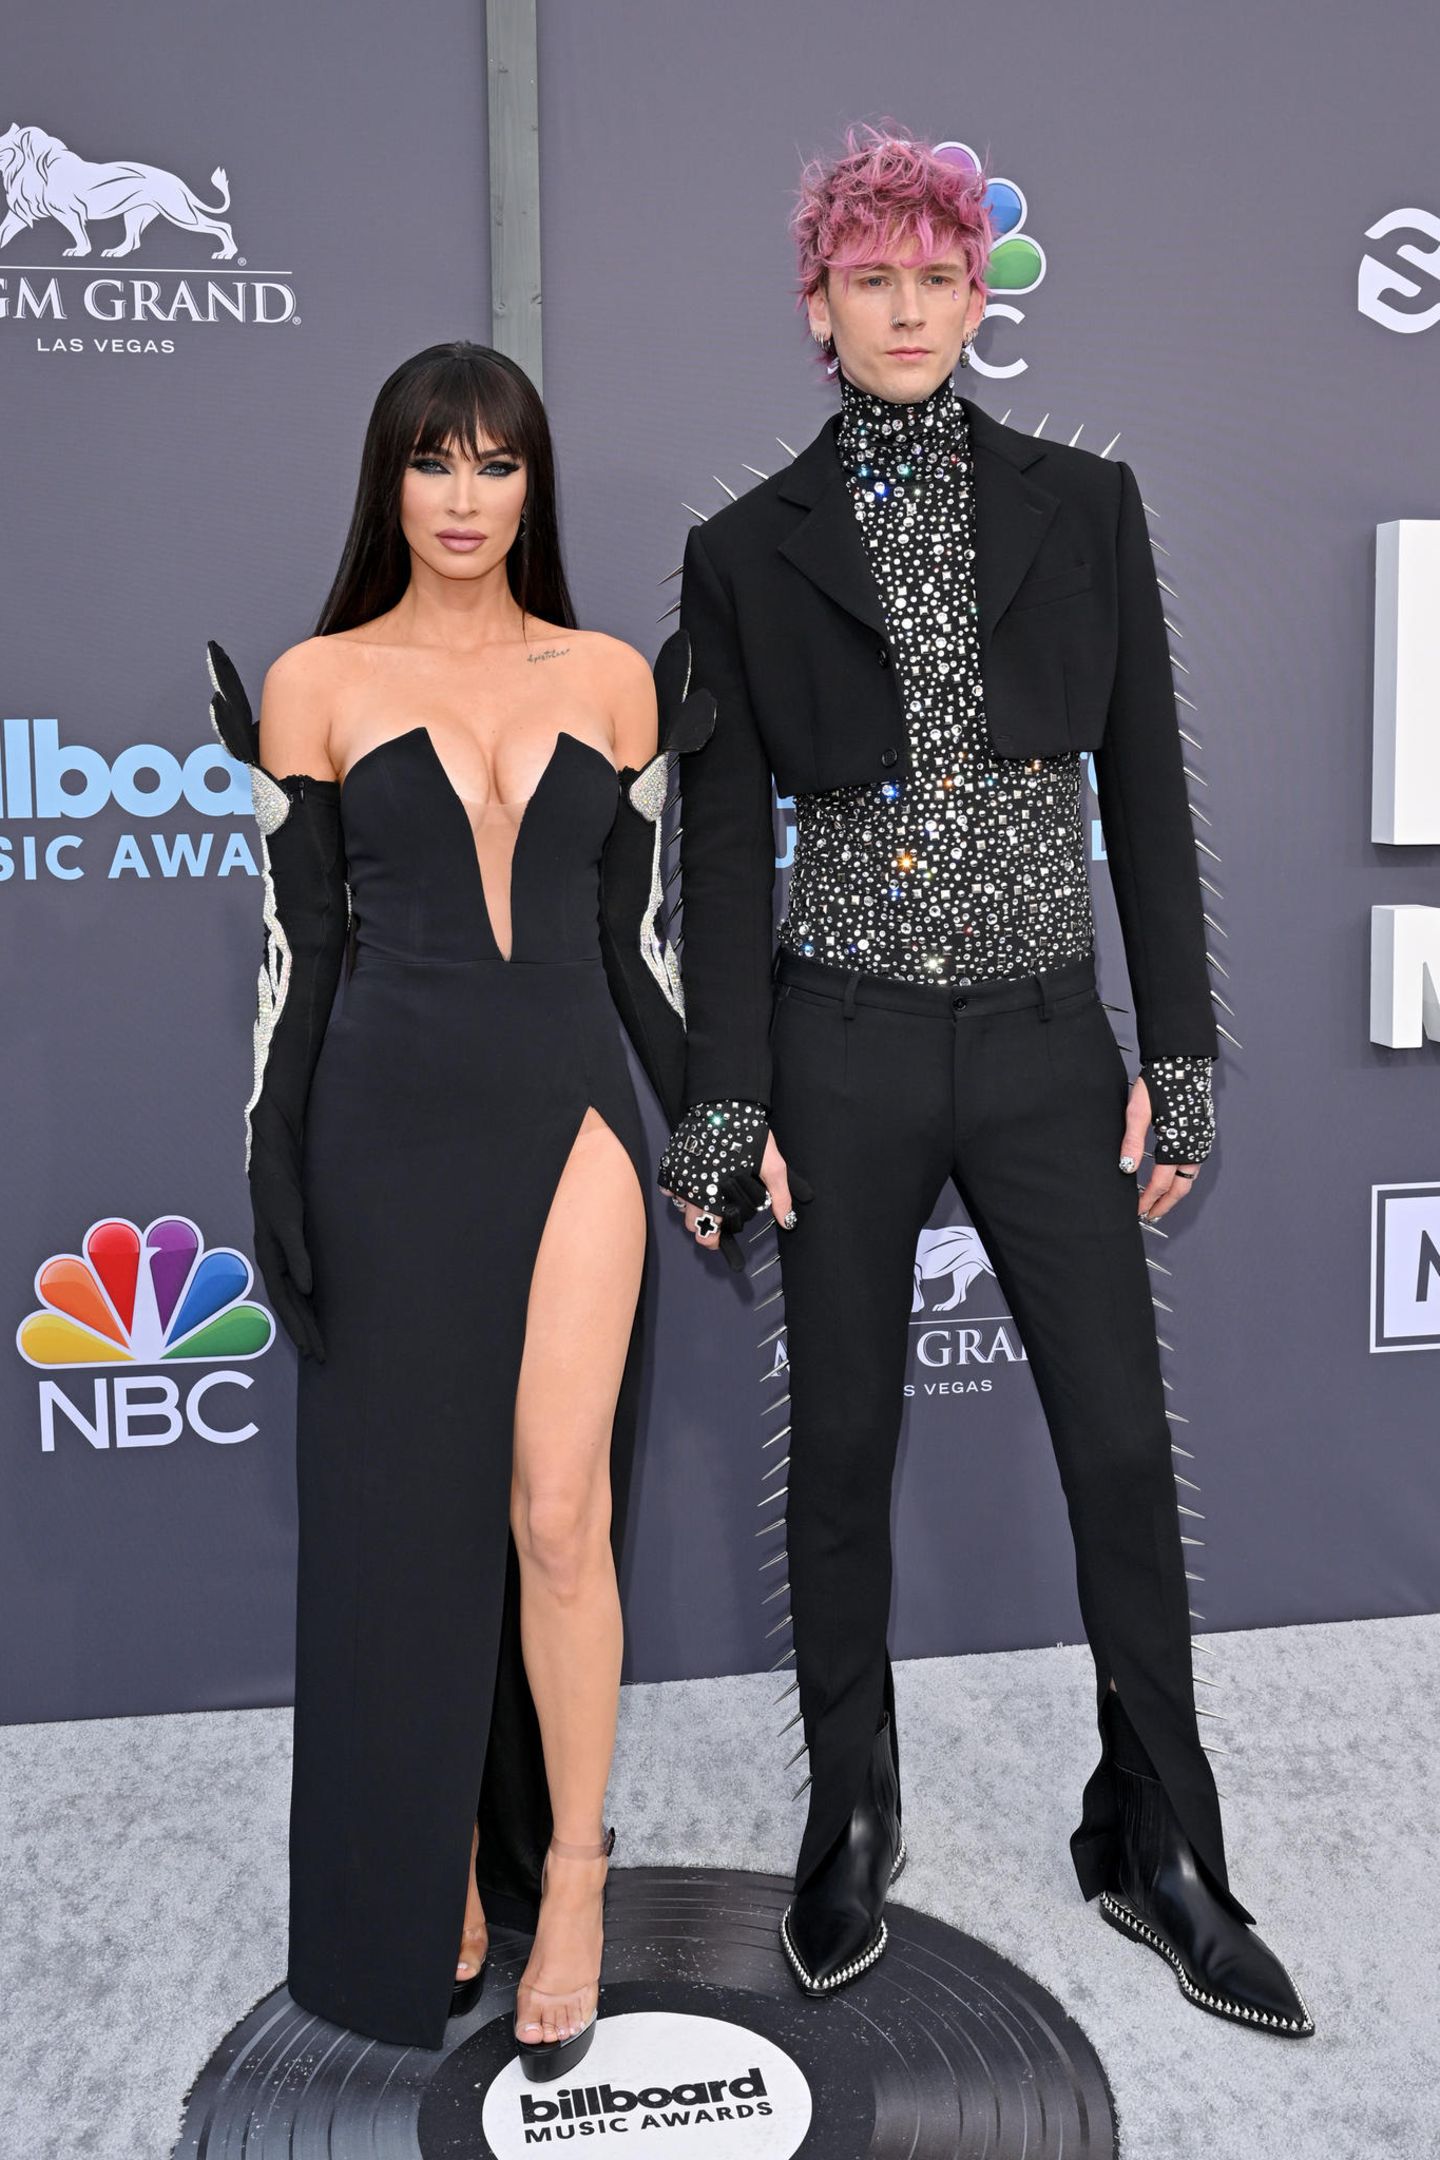 DAS Style Duo des Abends: Wieder einmal Megan Fox und Machine Gun Kelly. Sie begeistert im schulterfreien Kleid von David Koma und mit neuem Pony, er im Spike-Anzug von Dolce & Gabbana. 